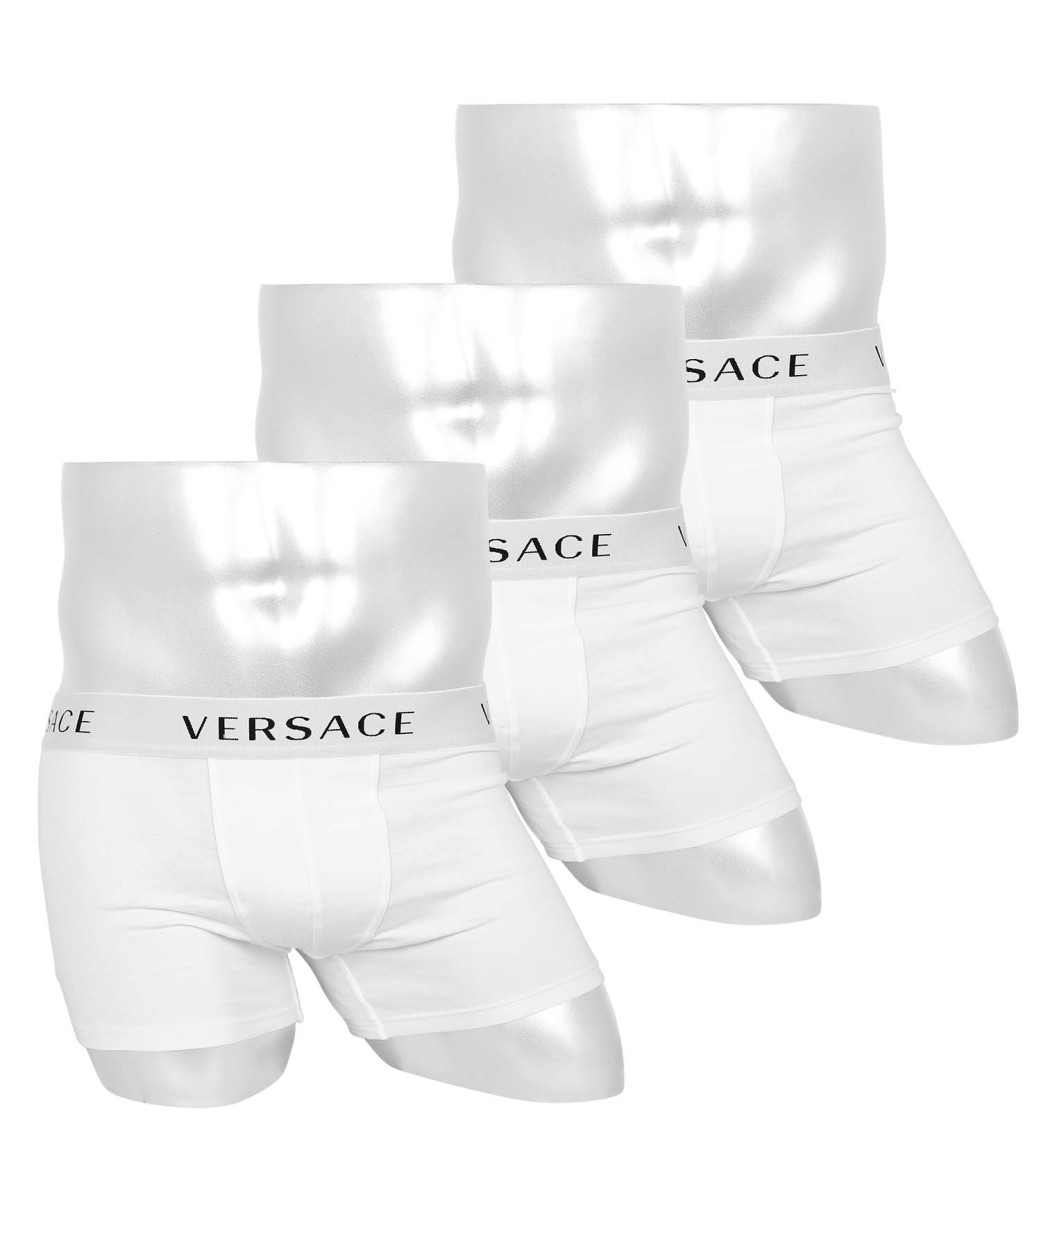 ワケあり ヴェルサーチェ Versace 3枚セット ボクサーパンツ メンズ 下着 アンダーウェア おしゃれ かっこいい 高級 ロゴ 無地 ハイブランド アウトレット